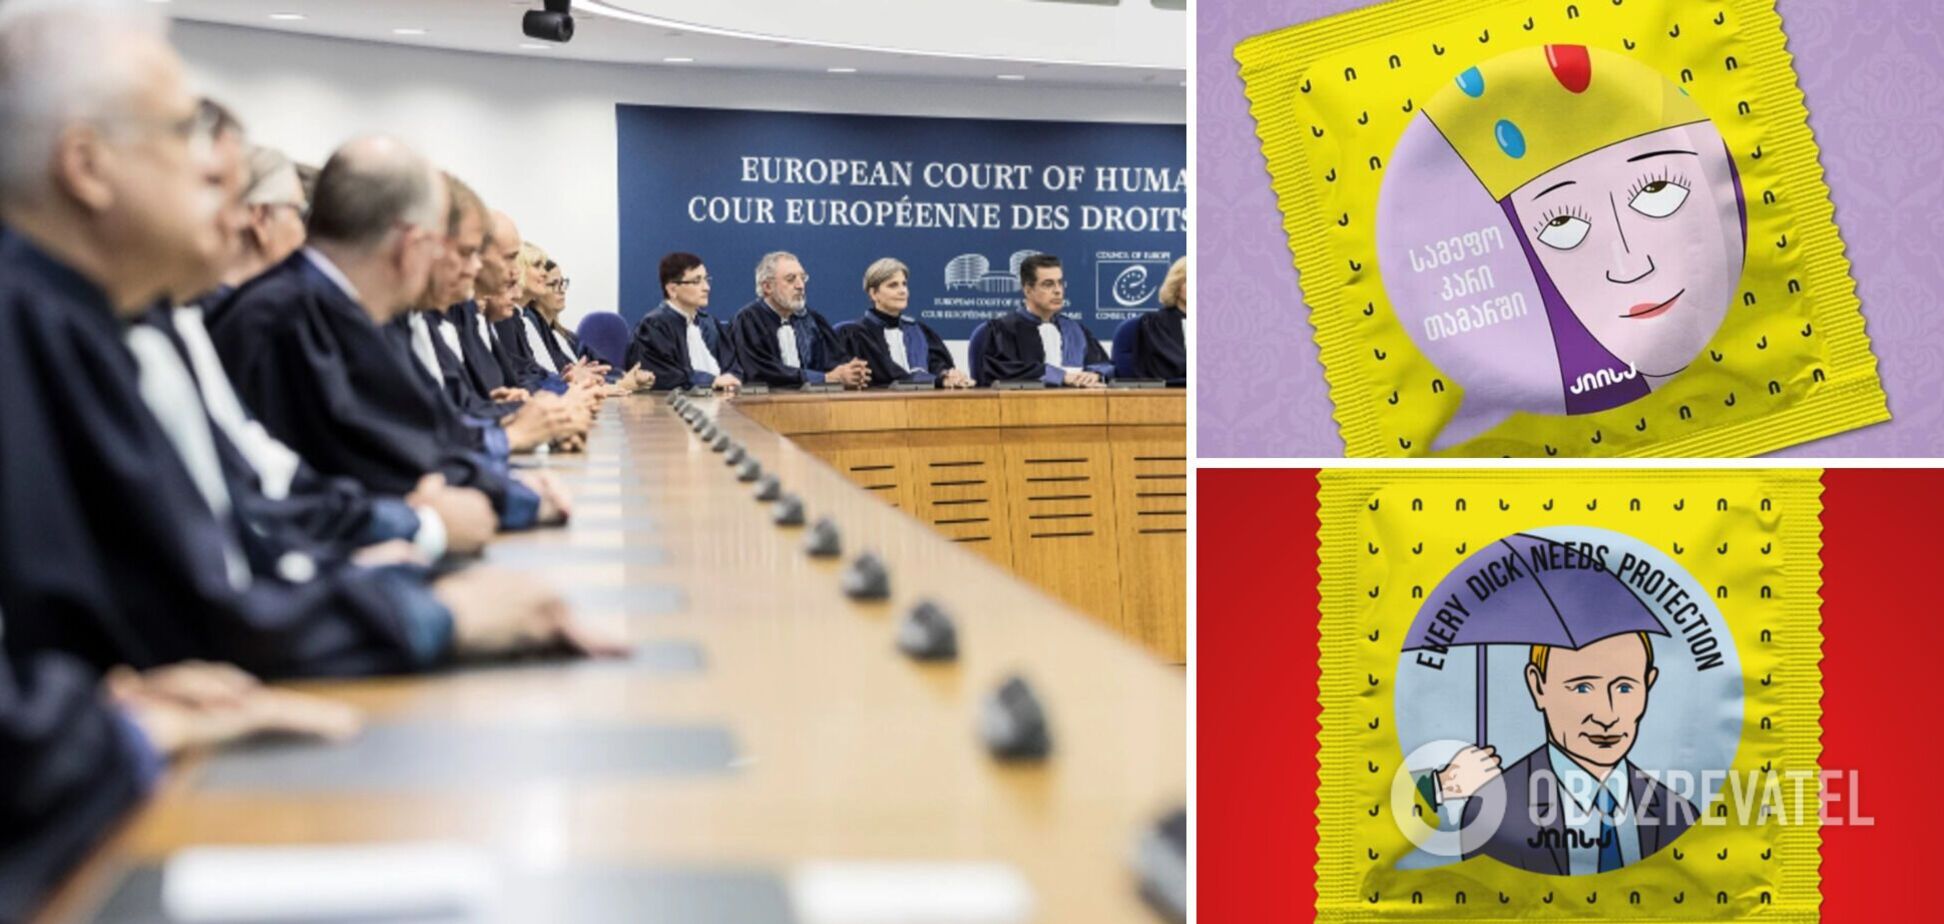 Грузинський виробник презервативів із зображенням Путіна виграв позов до ЄСПЛ